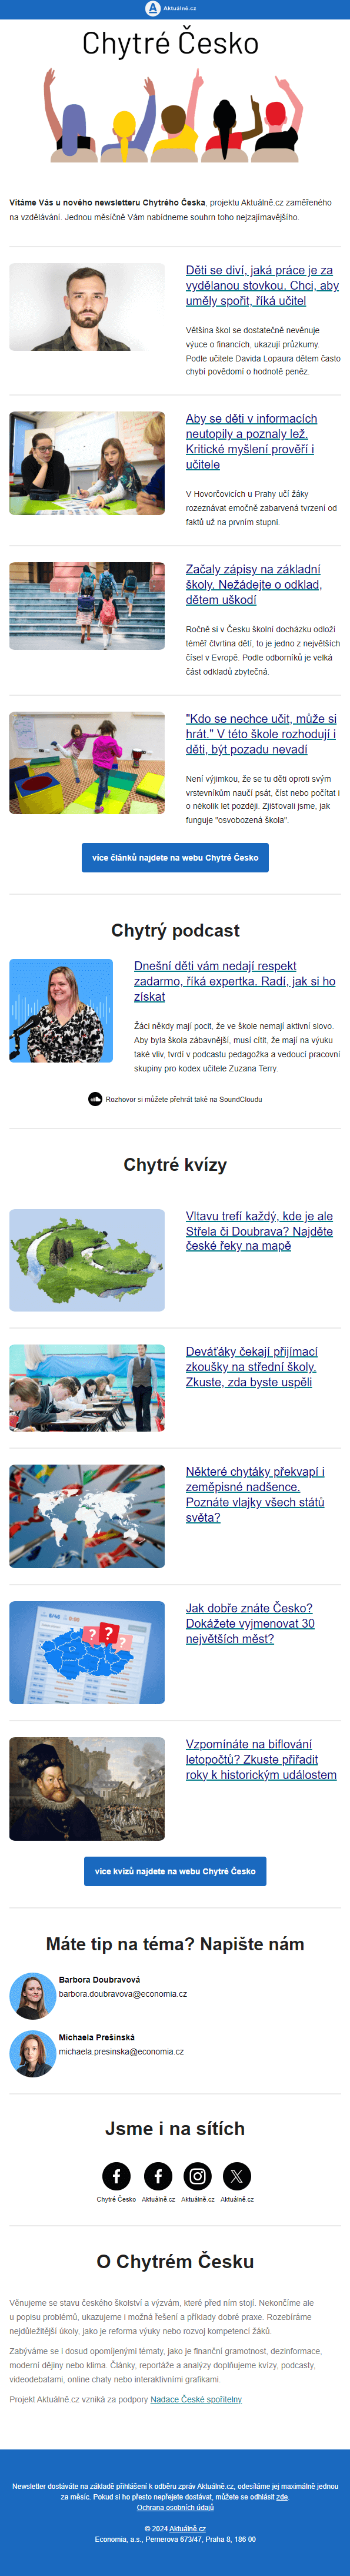 Náhled newsletteru chytré Česko přehled Aktuálně.cz.cz